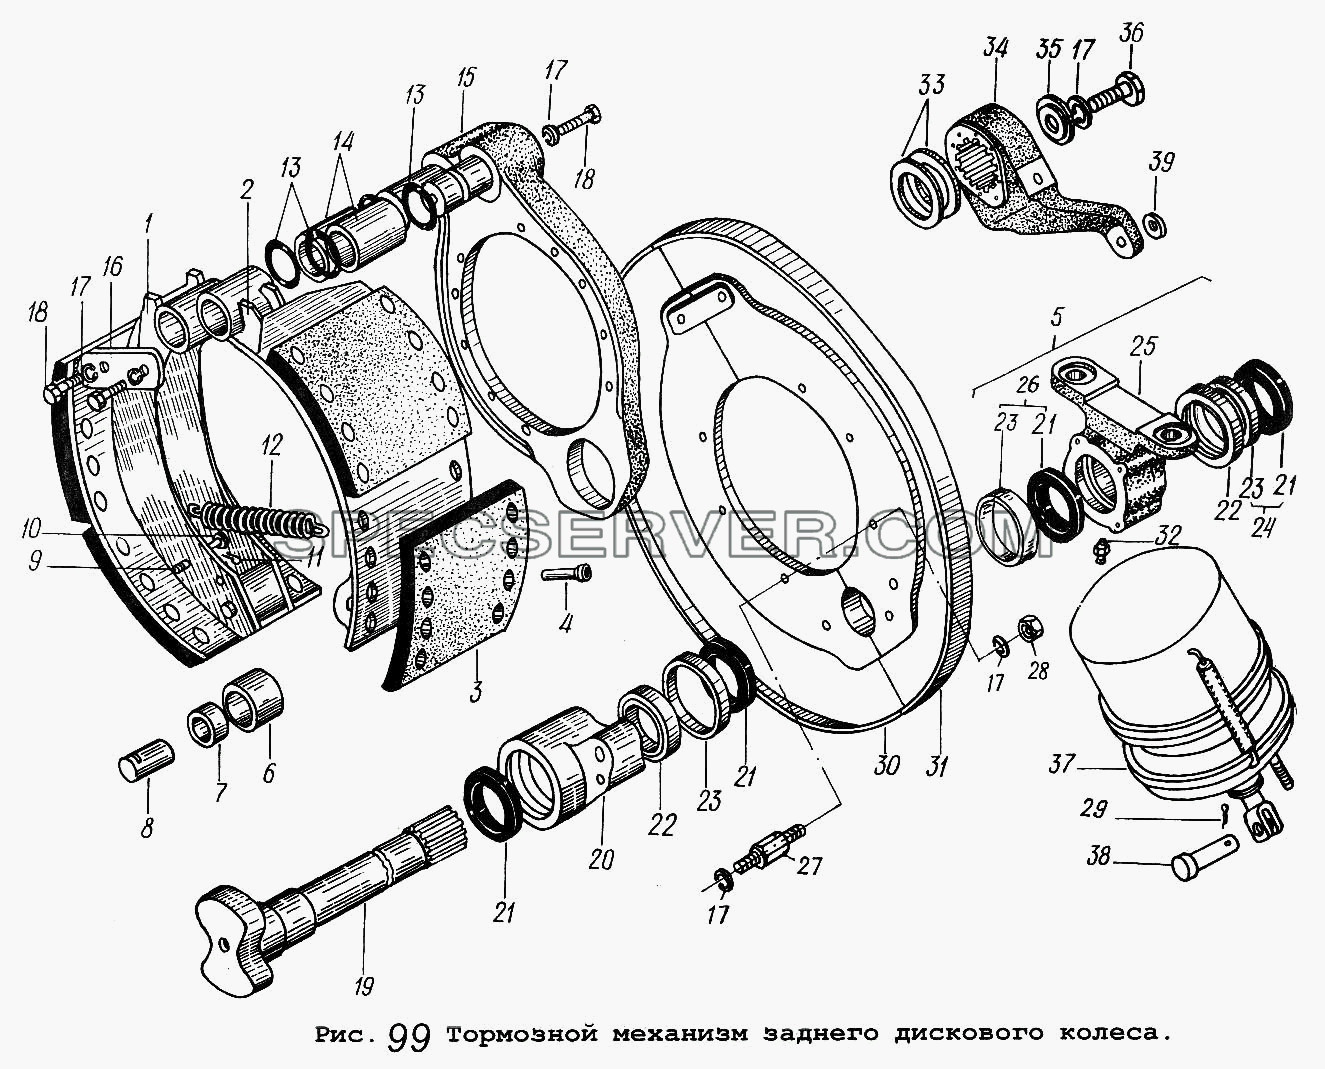 Тормозной механизм заднего дискового колеса для МАЗ-5516 (список запасных частей)